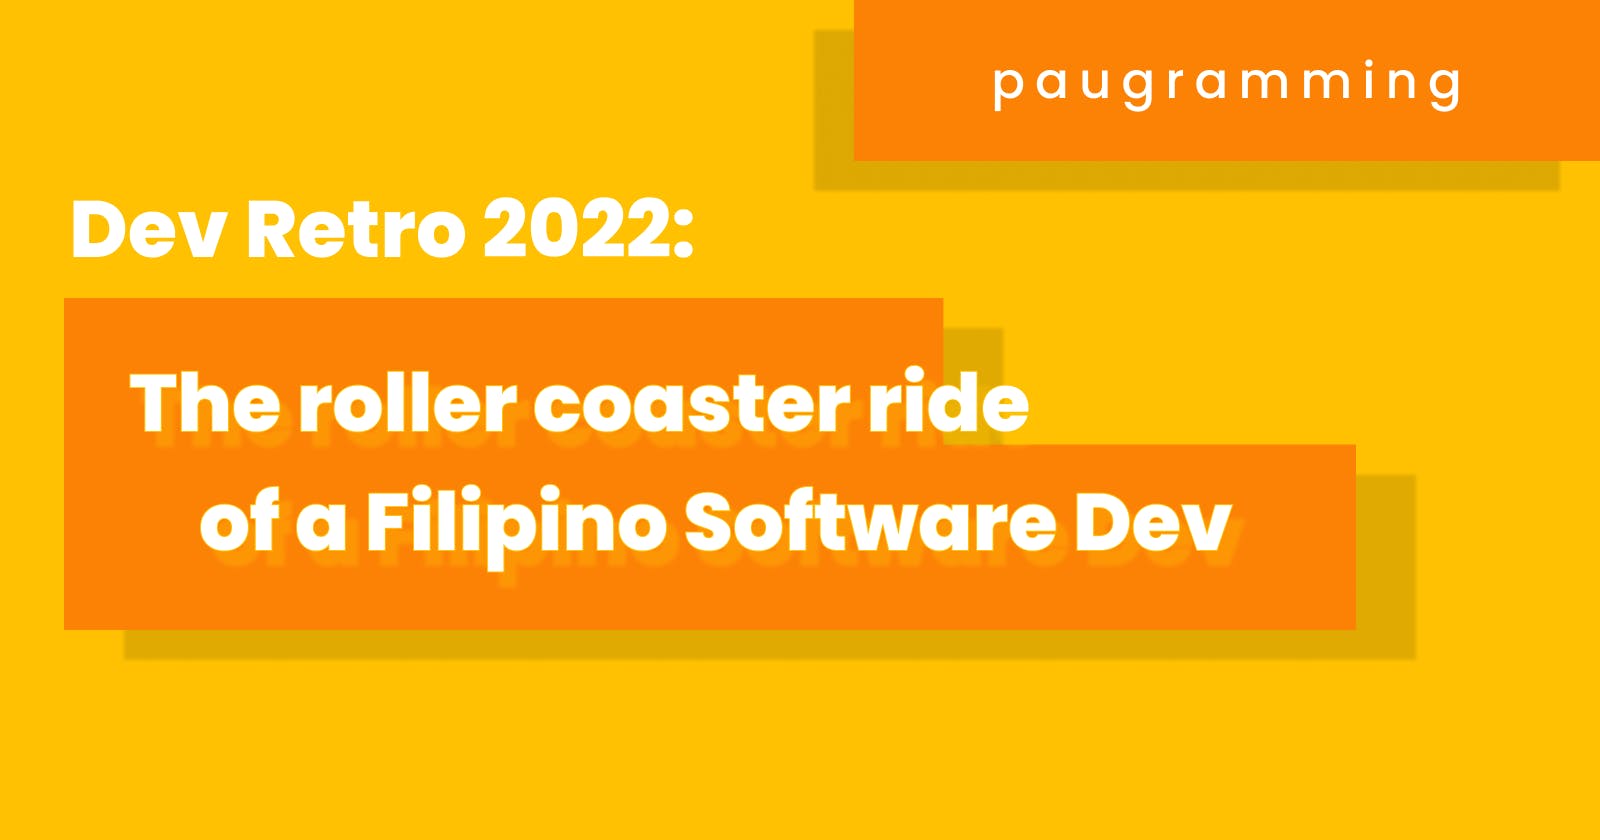 Dev Retro 2022: The Roller Coaster Ride of a Filipino Software Dev